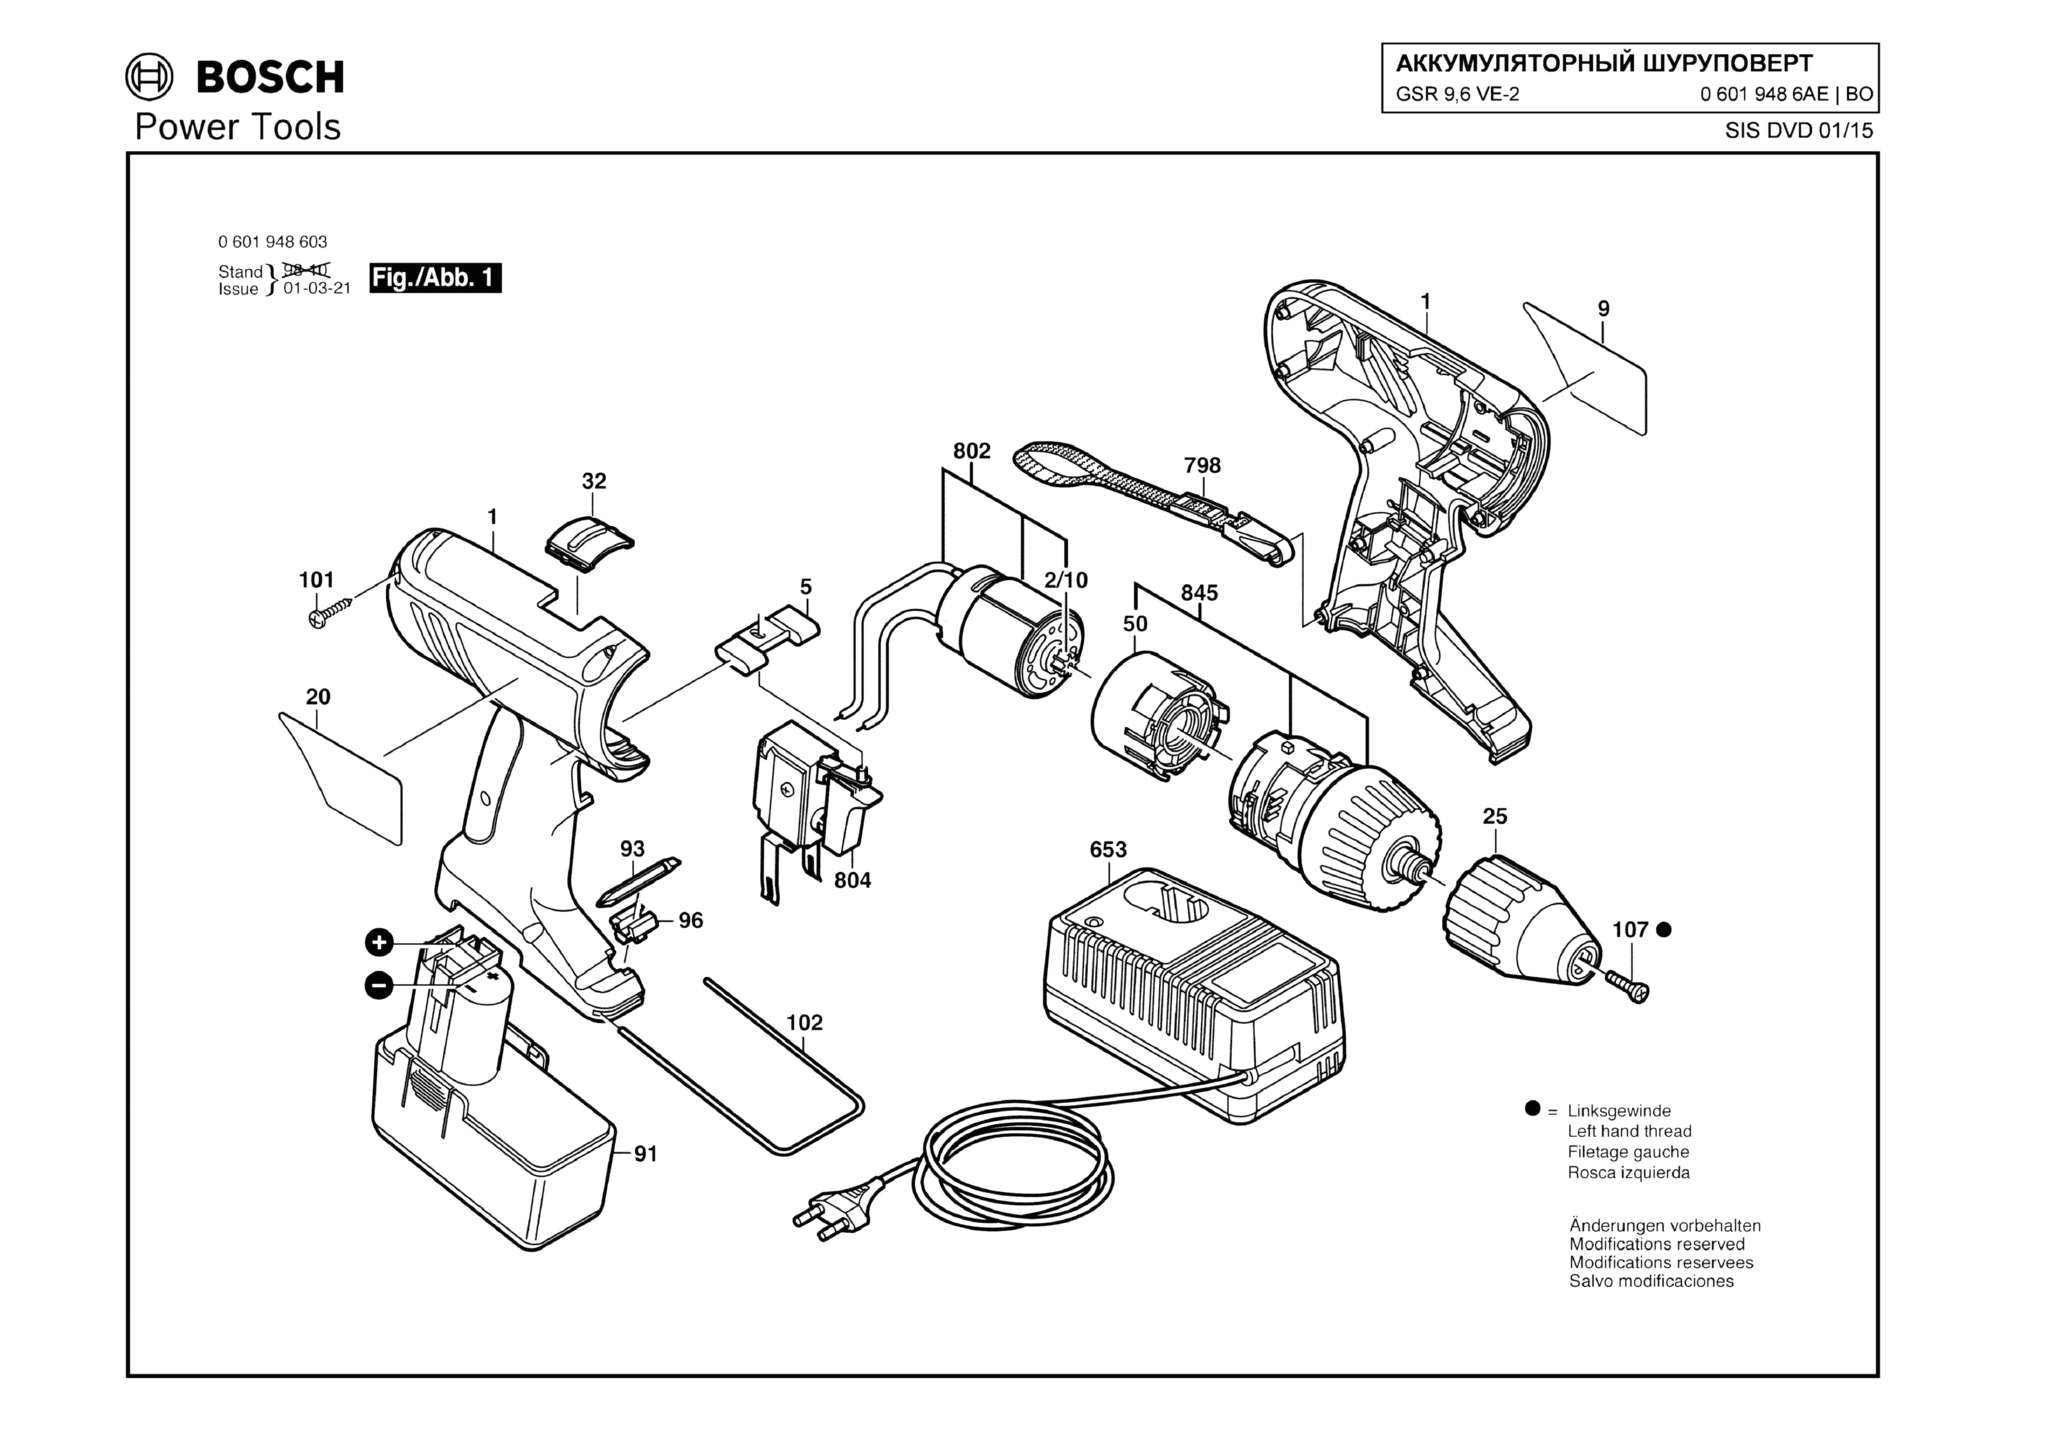 Запчасти, схема и деталировка Bosch GSR 9,6 VE-2 (ТИП 06019486AE)